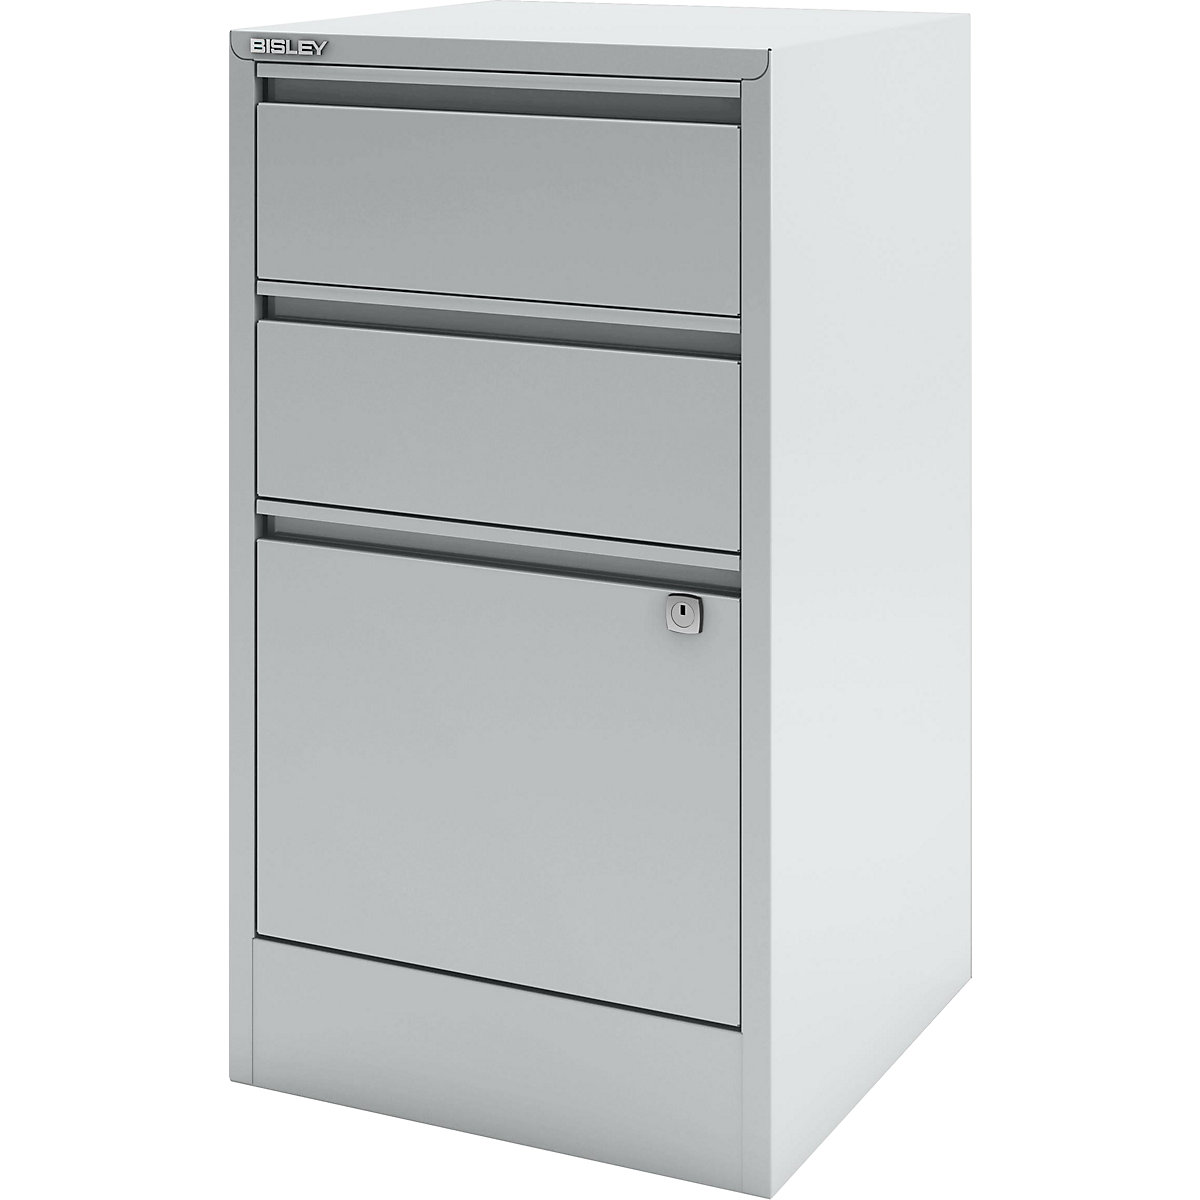 HomeFiler suspension filing cabinet – BISLEY, 2 drawers, 1 suspension file drawer, light grey-7